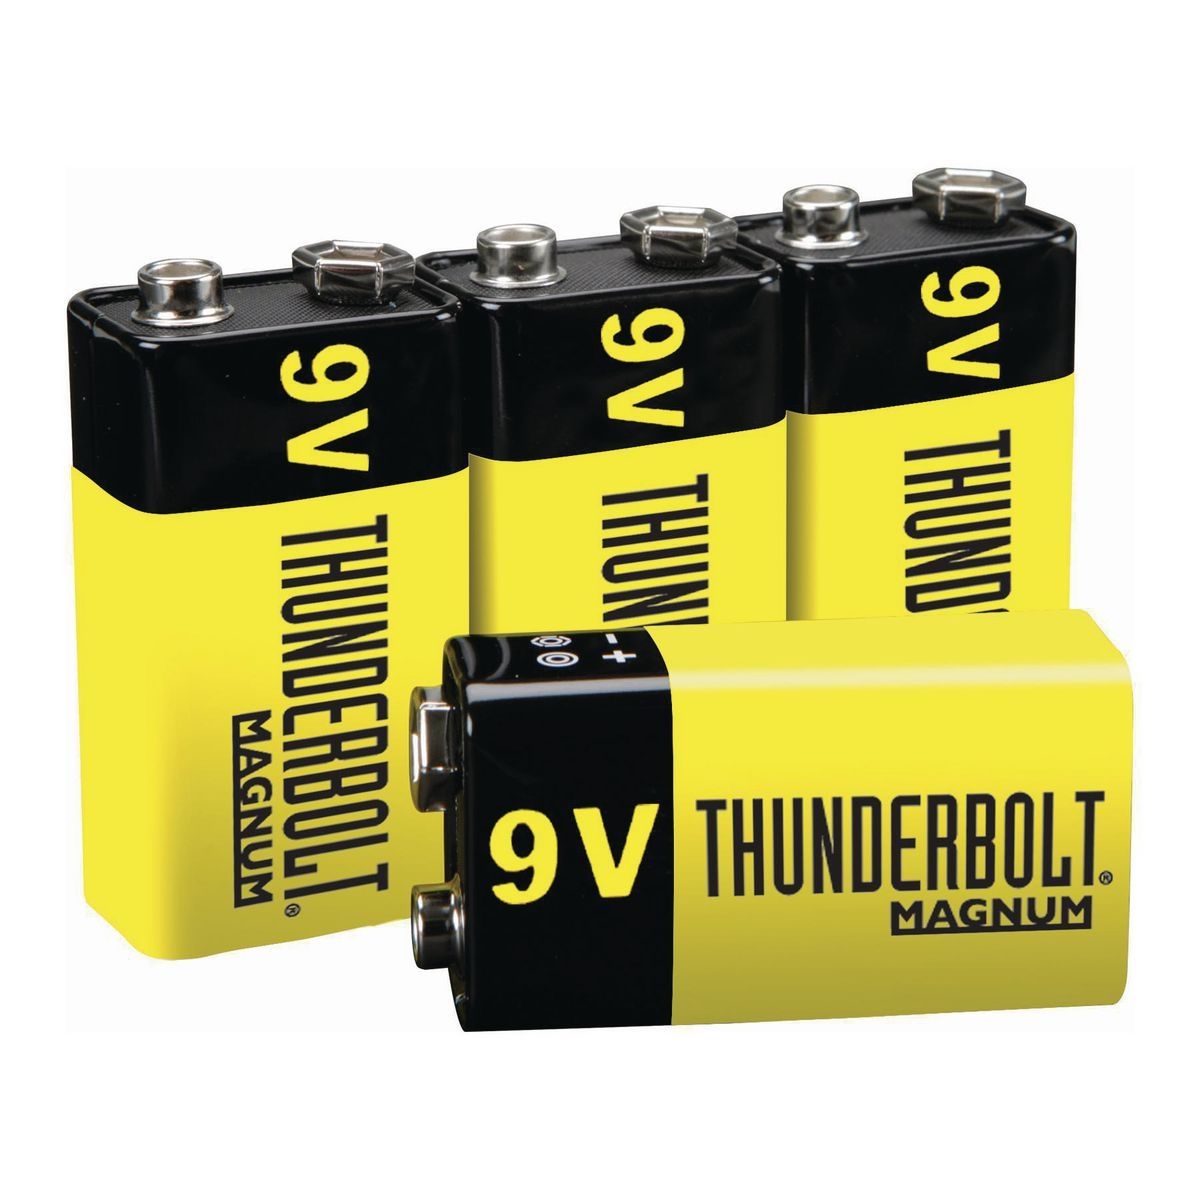 THUNDERBOLT MAGNUM 9V Zinc Chloride Batteries, 4 Pack